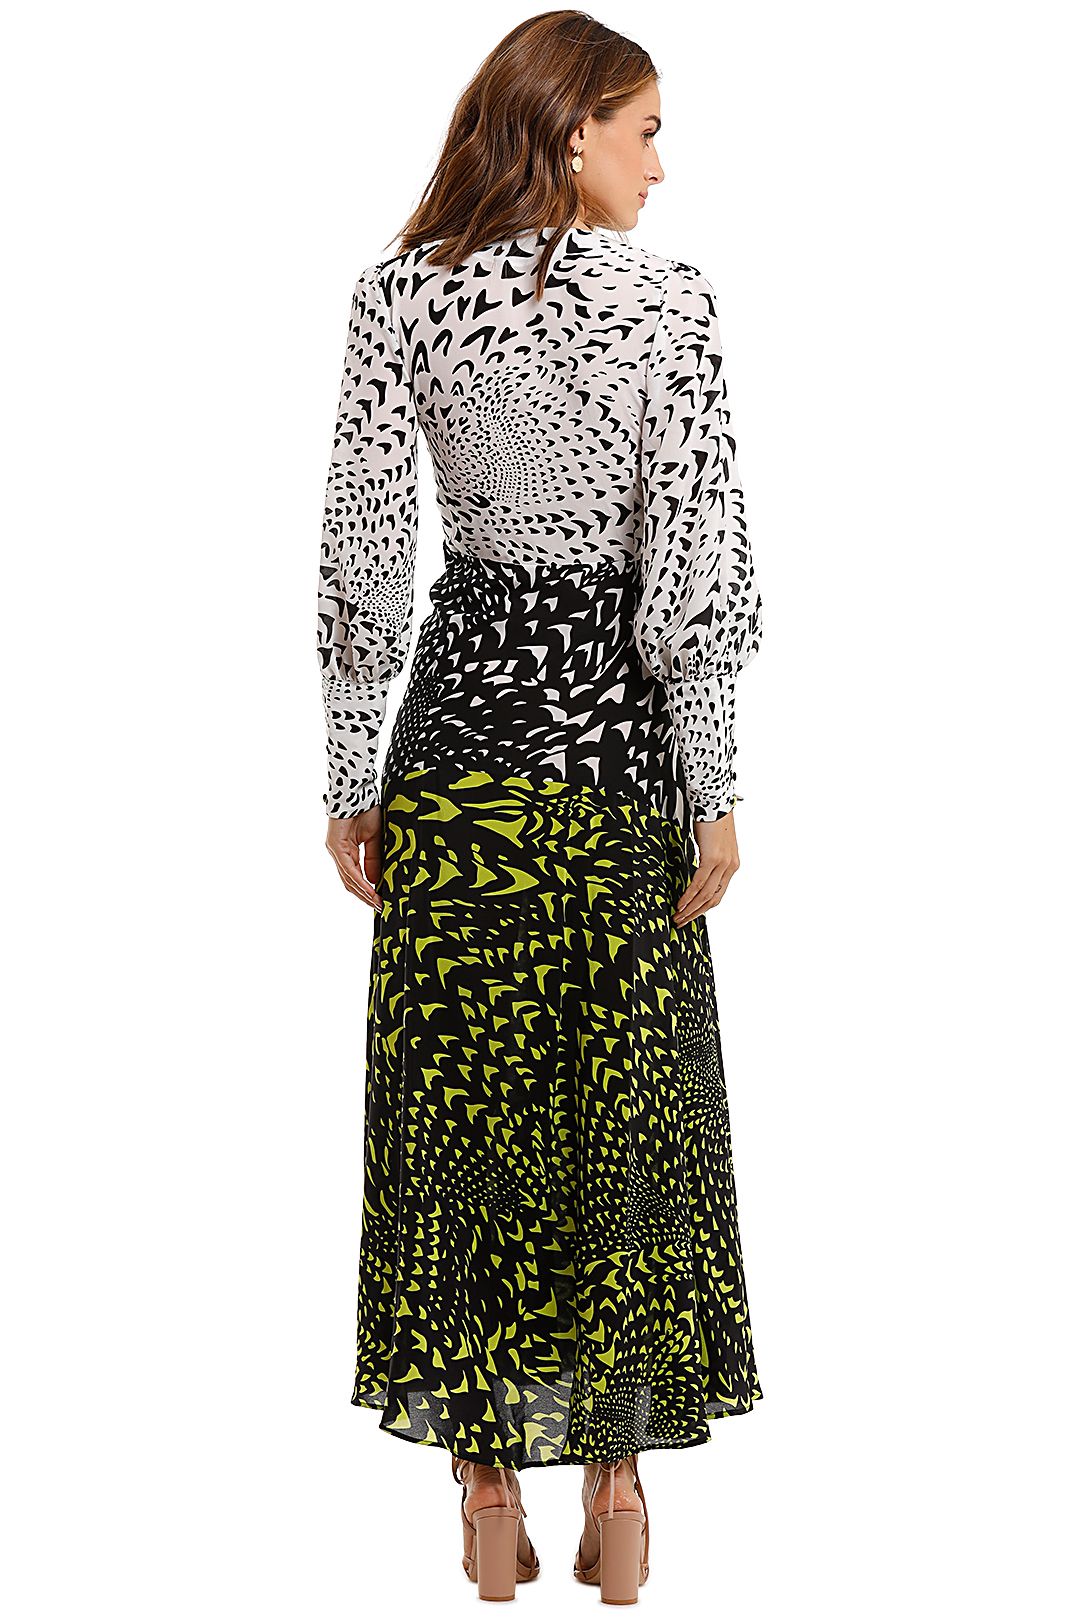 Hayley Menzies Midaxi Wings Printed Dress Long Sleeve